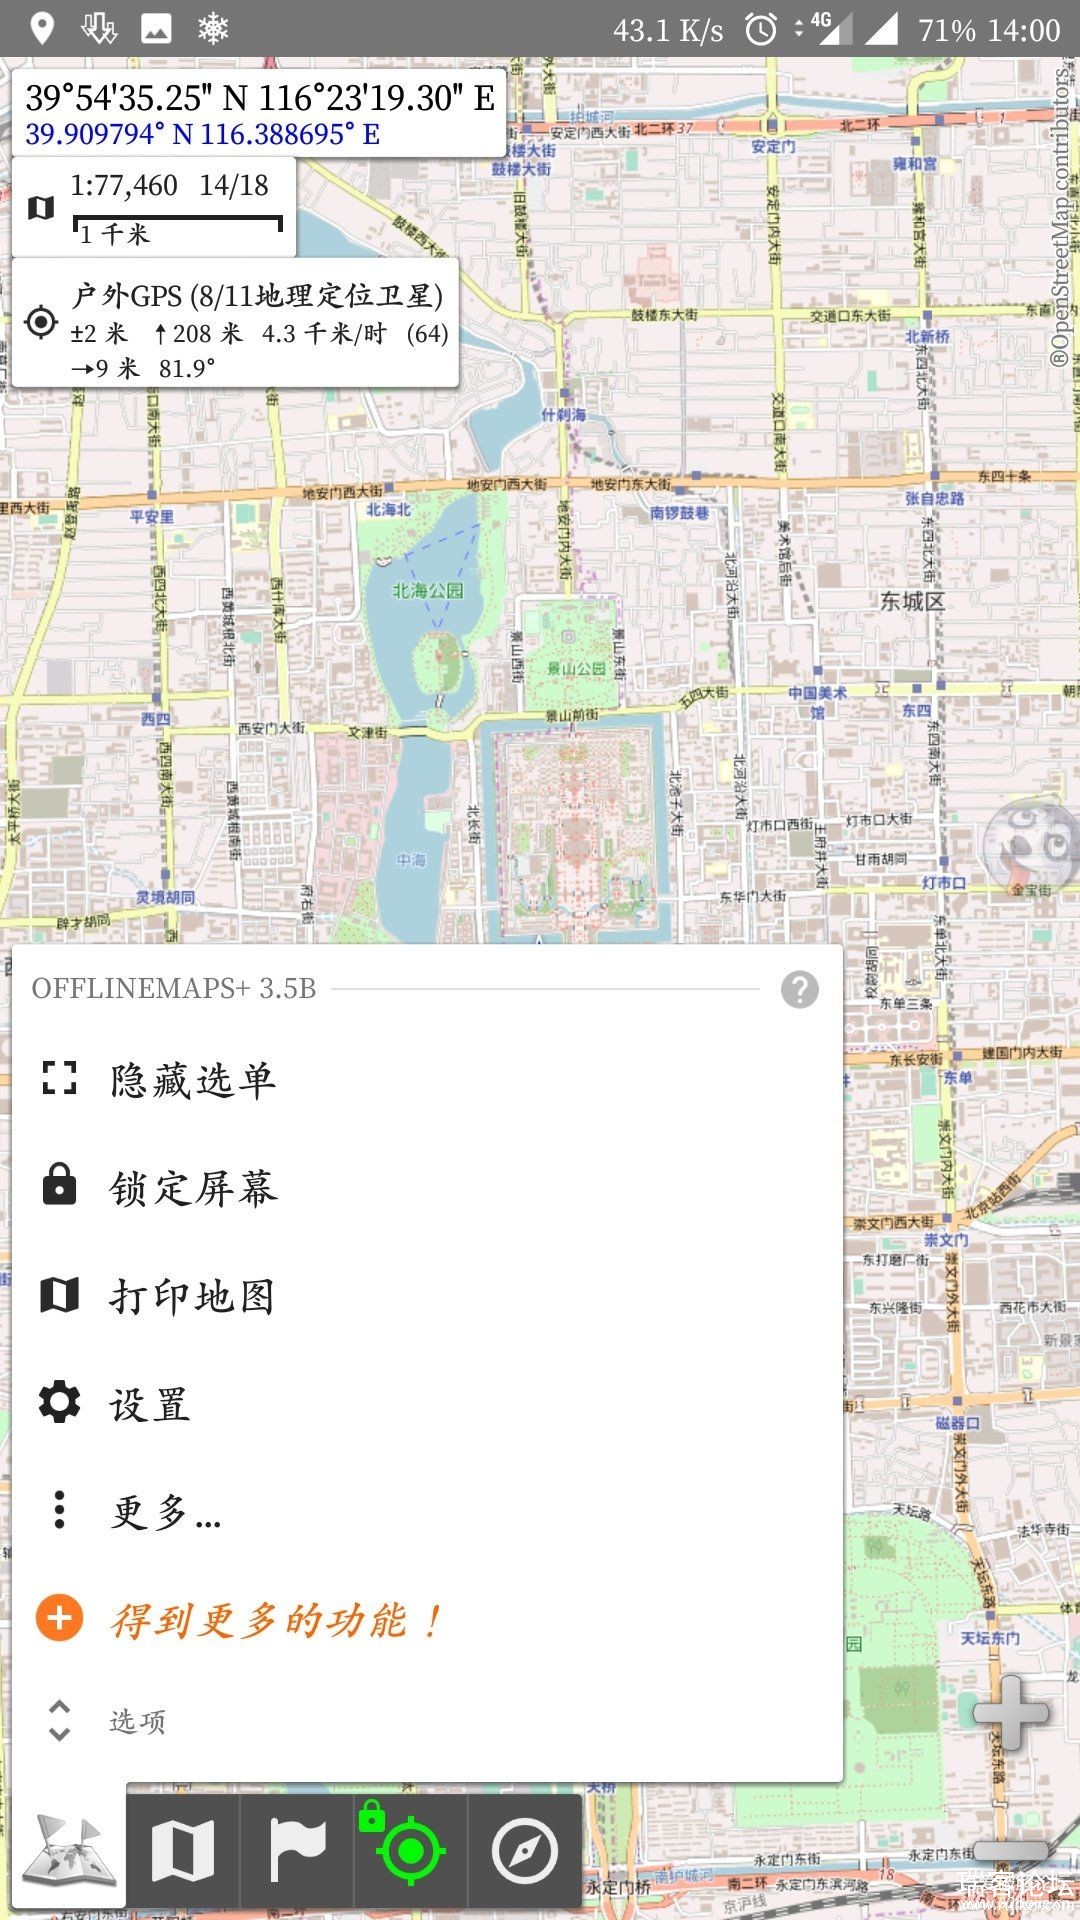 All-In-One Offline Maps v3.5b Ѱ-3.jpg